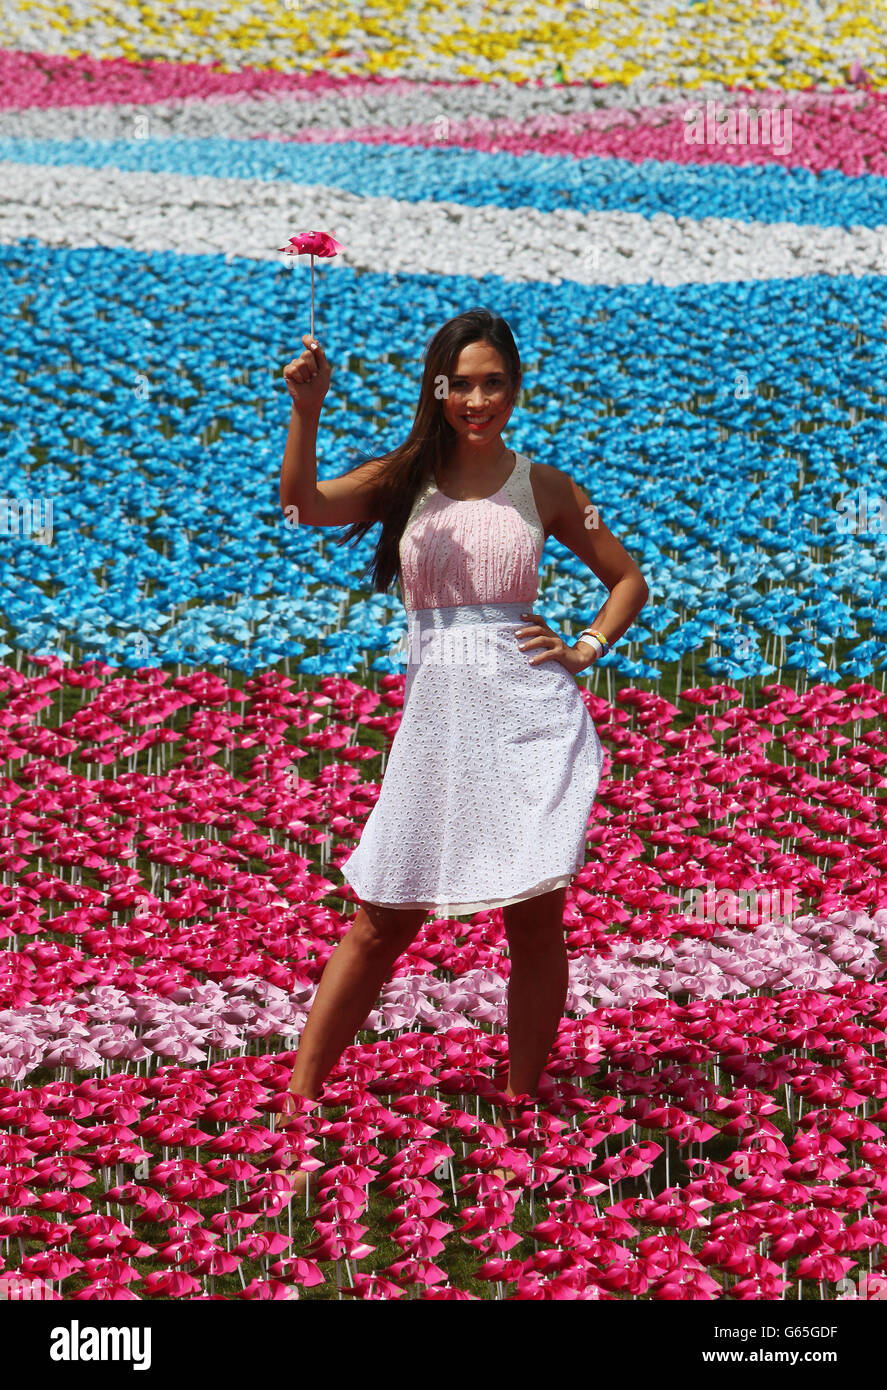 Myleene Klass si erge con uno dei 250,000 fiori con otto petali ciascuno per rappresentare i due milioni di bambini che muoiono di fame ogni anno, al Big IF London, Hyde Park, Londra. Foto Stock